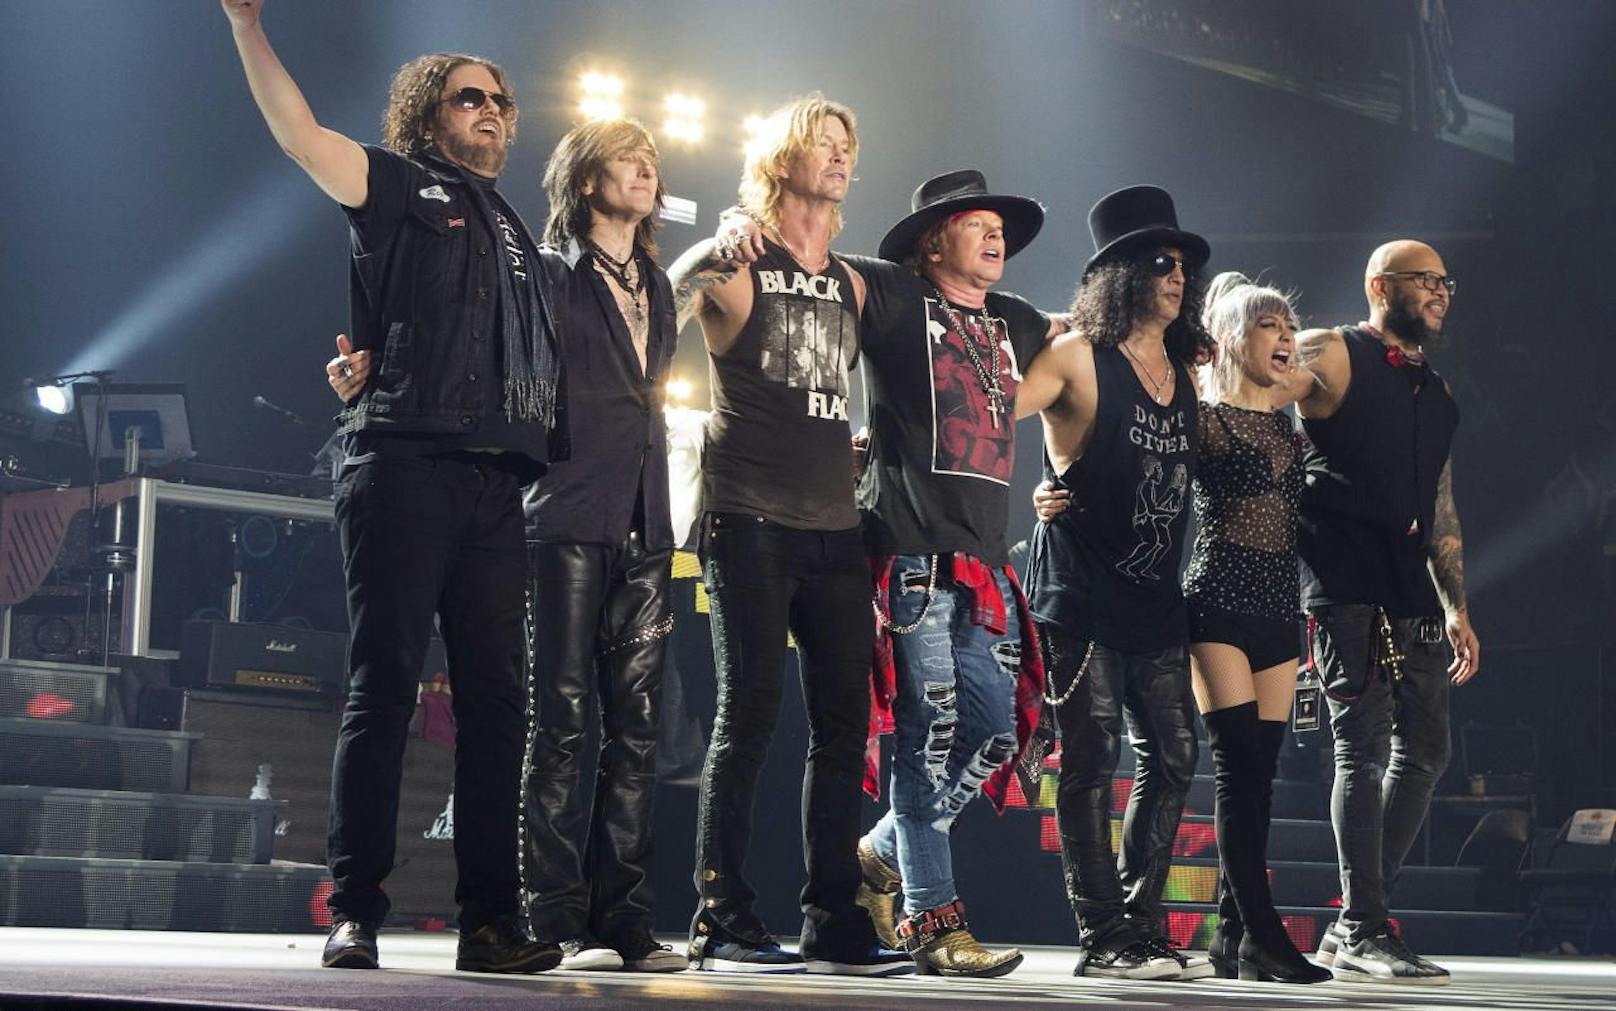 Seit 2016 gehen die drei Guns N'Roses-Gründungsmitglieder Axl Rose, Duff McKagan und Slash wieder gemeinsam mit Keyboarder Dizzy Reed und weitern Musikern auf Tournee